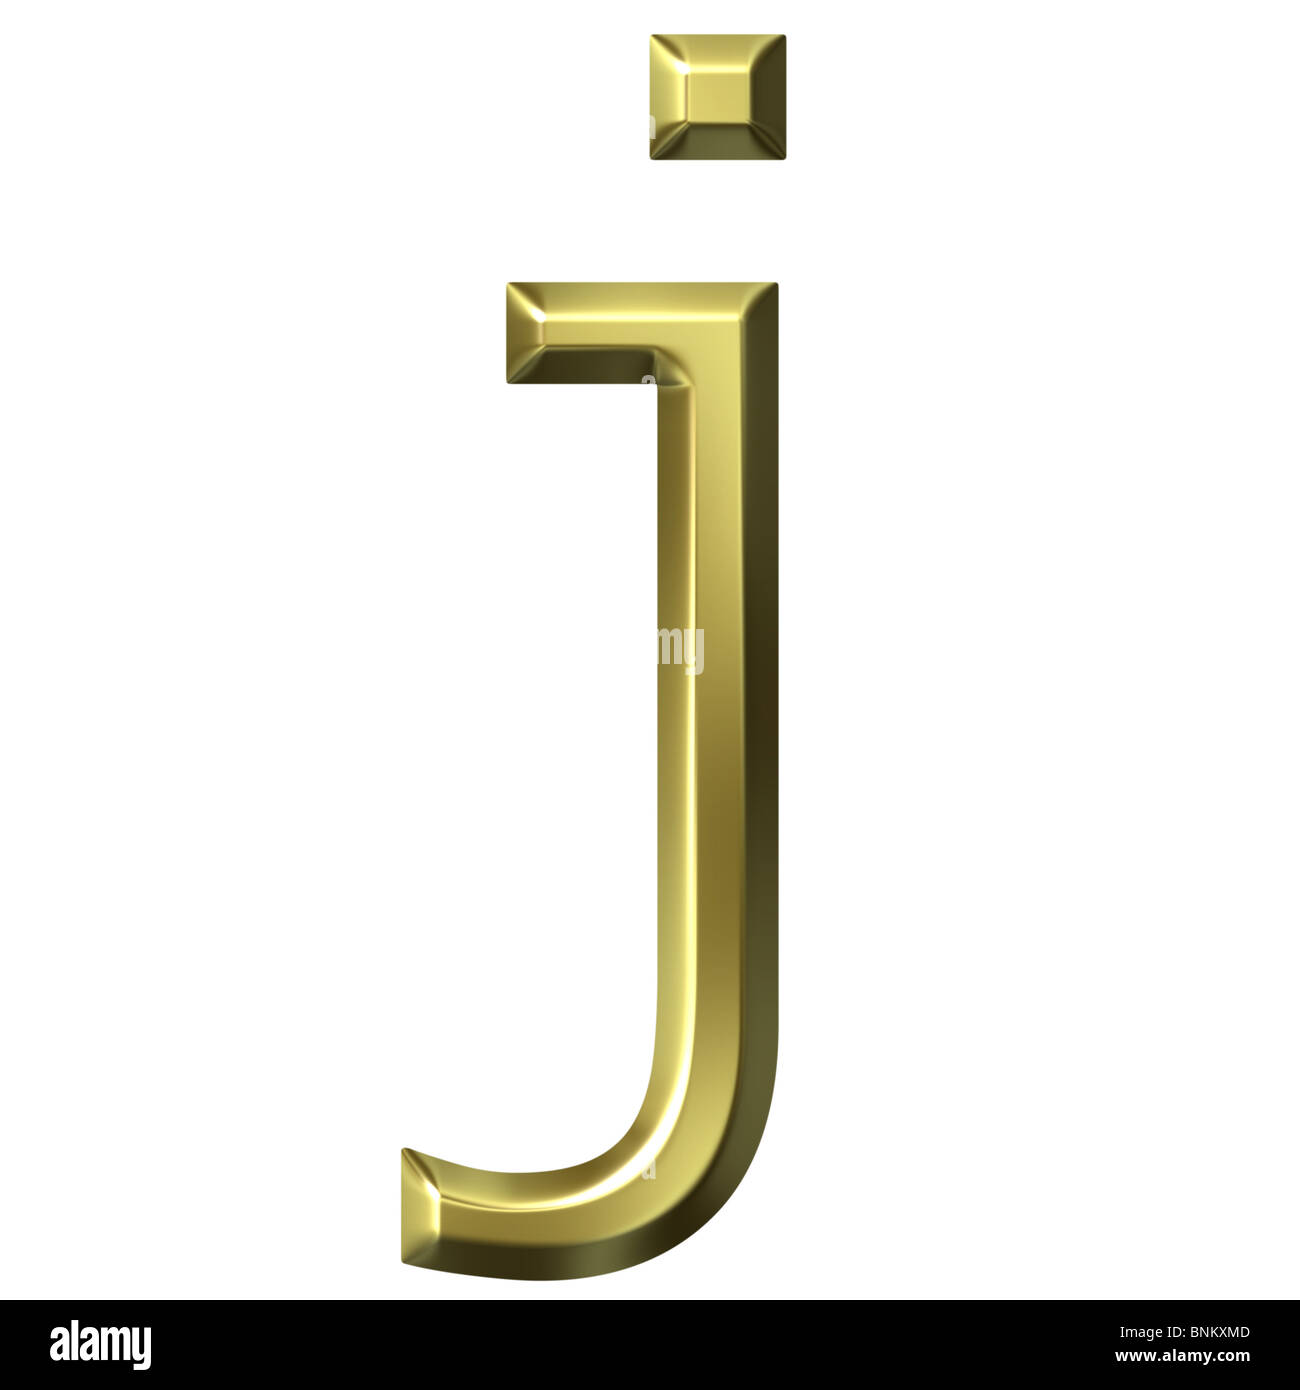 3d golden letter j Stock Photo